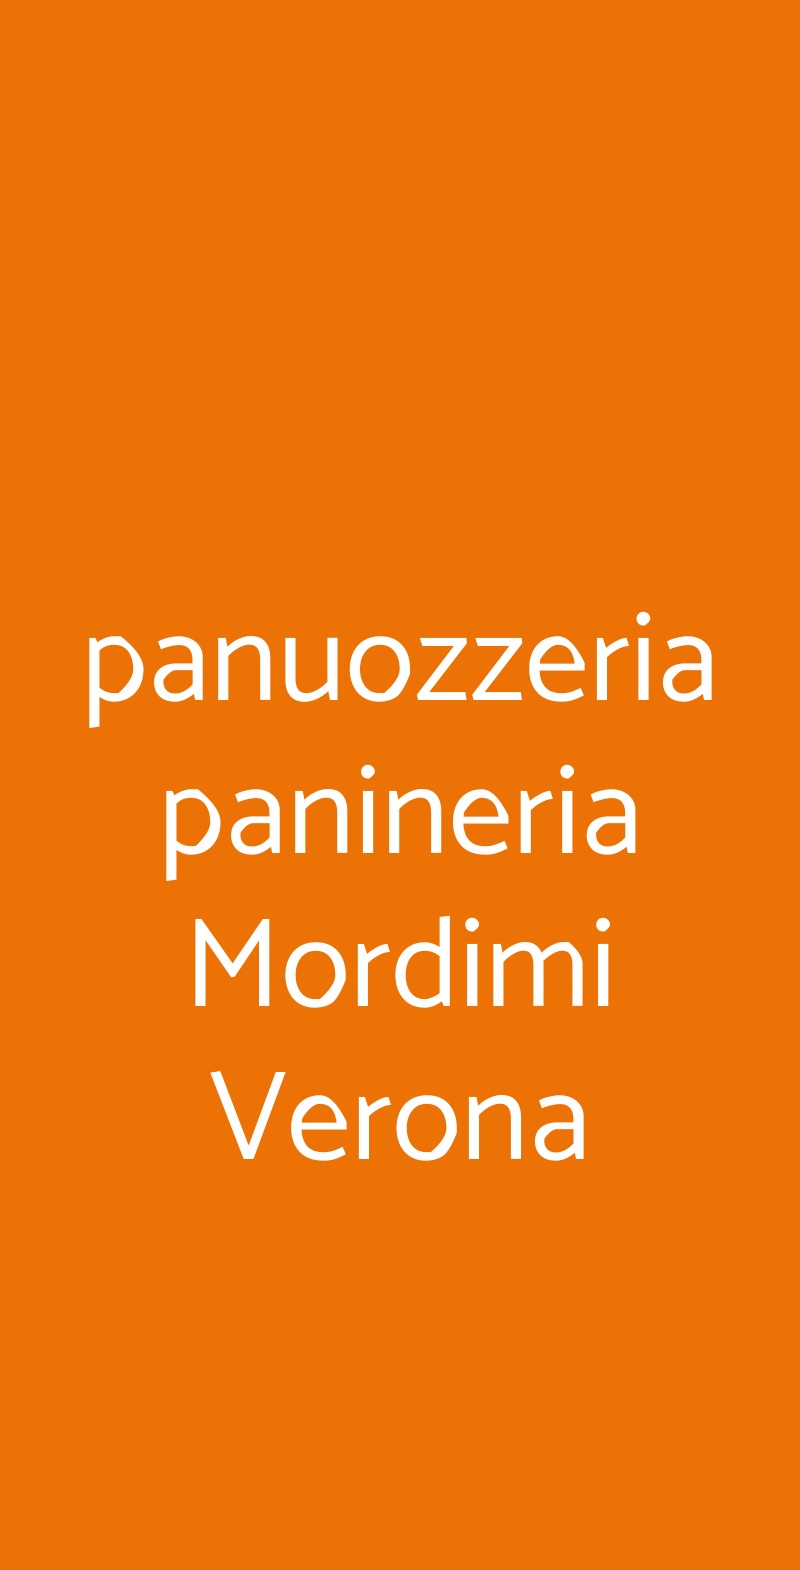 panuozzeria panineria Mordimi Verona Verona menù 1 pagina